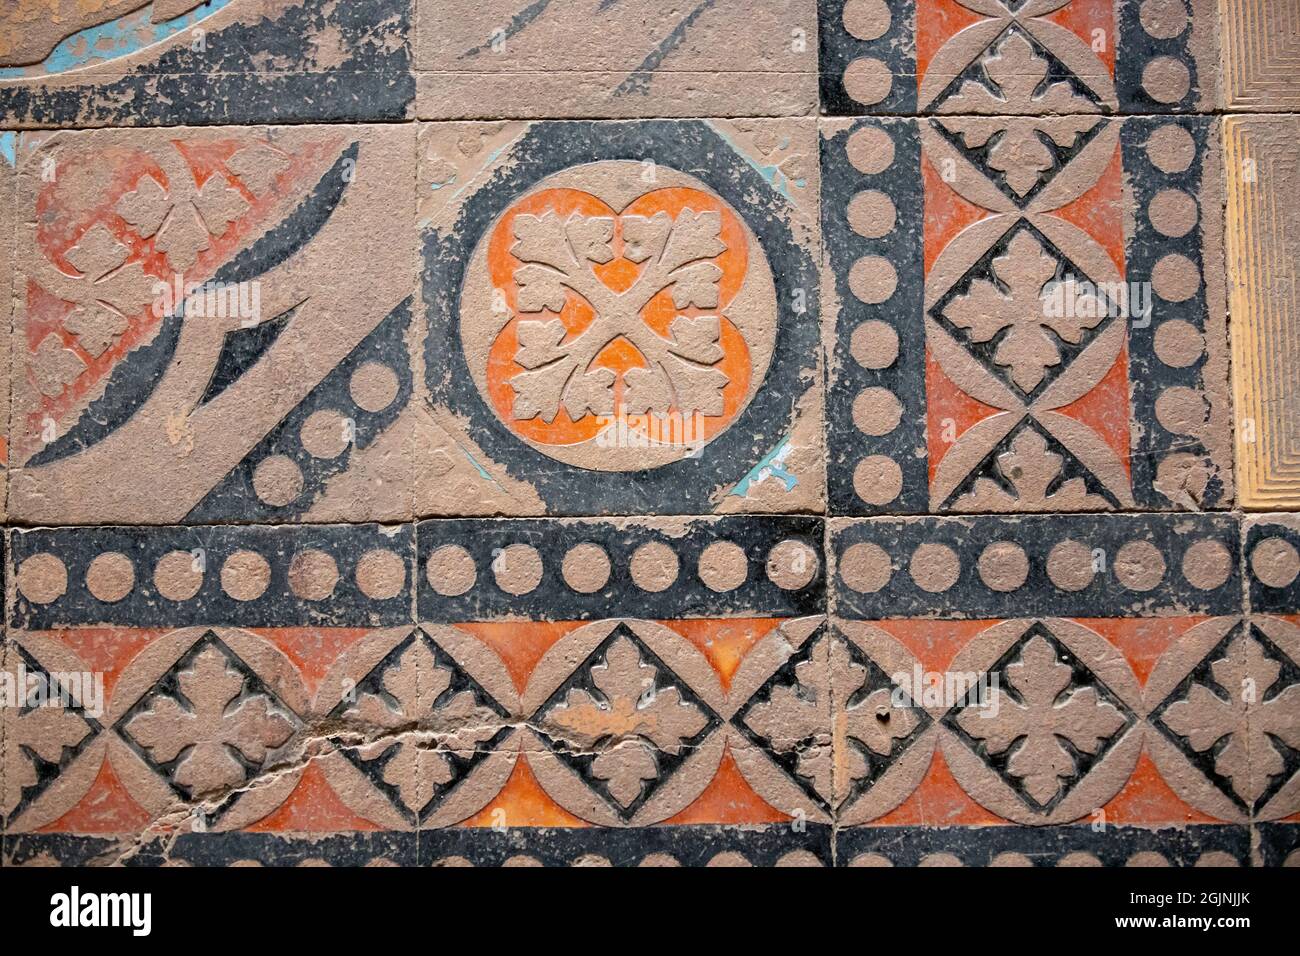 HUNEDOARA, ROMANIA - 06 ago 2021: Un pavimento a mosaico del periodo medievale al Castello di Corvin nella città di Hunedoara Foto Stock